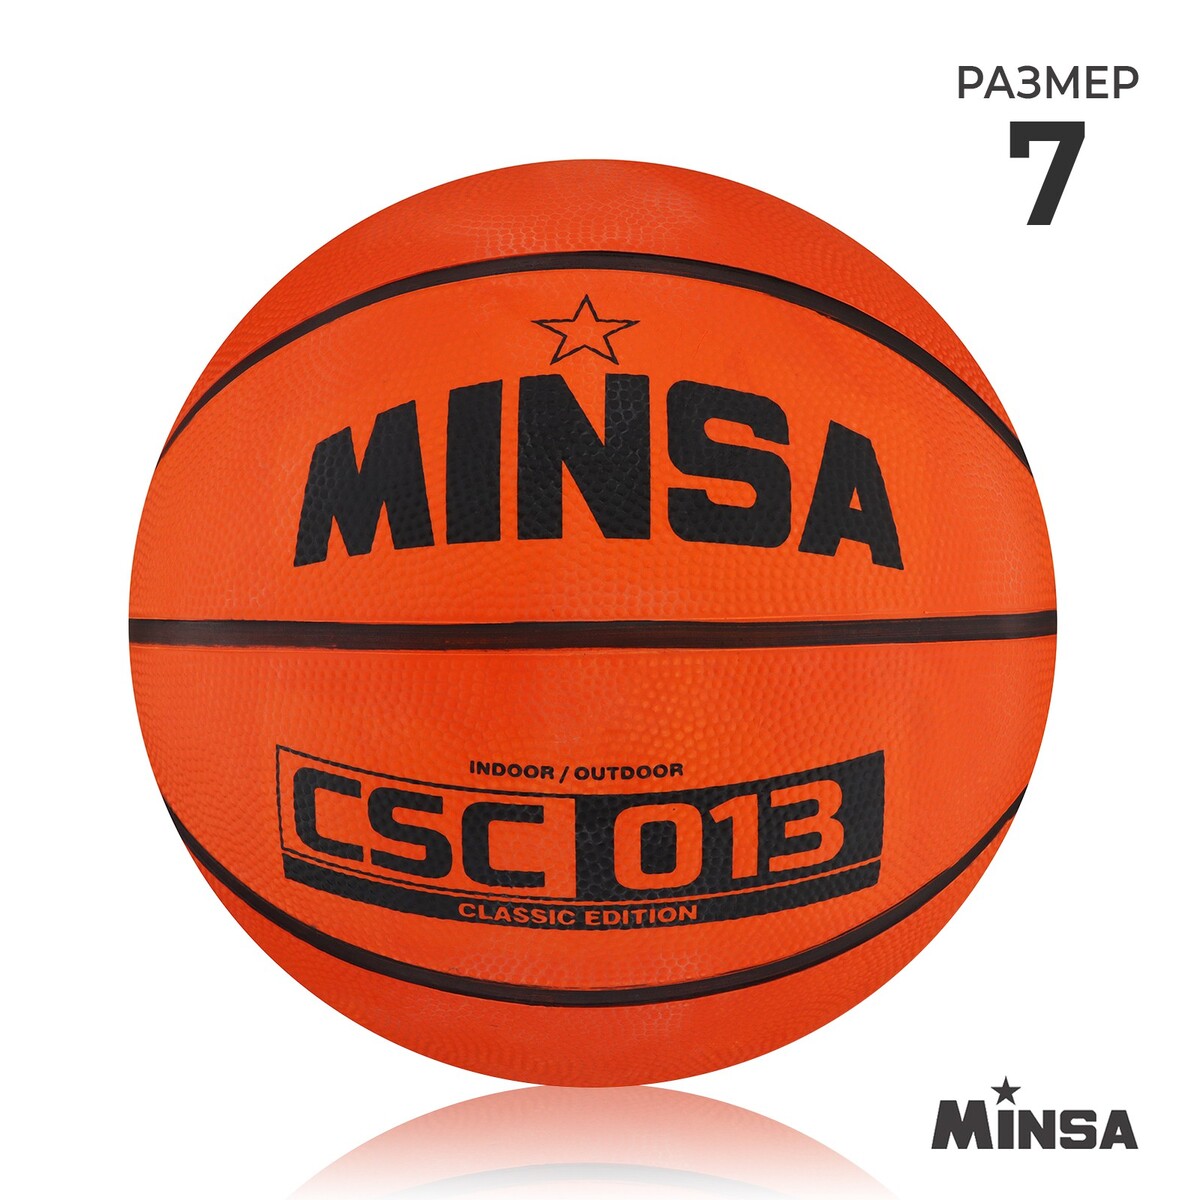 Мяч баскетбольный minsa csc 013, пвх, клееный, 8 панелей, р. 7